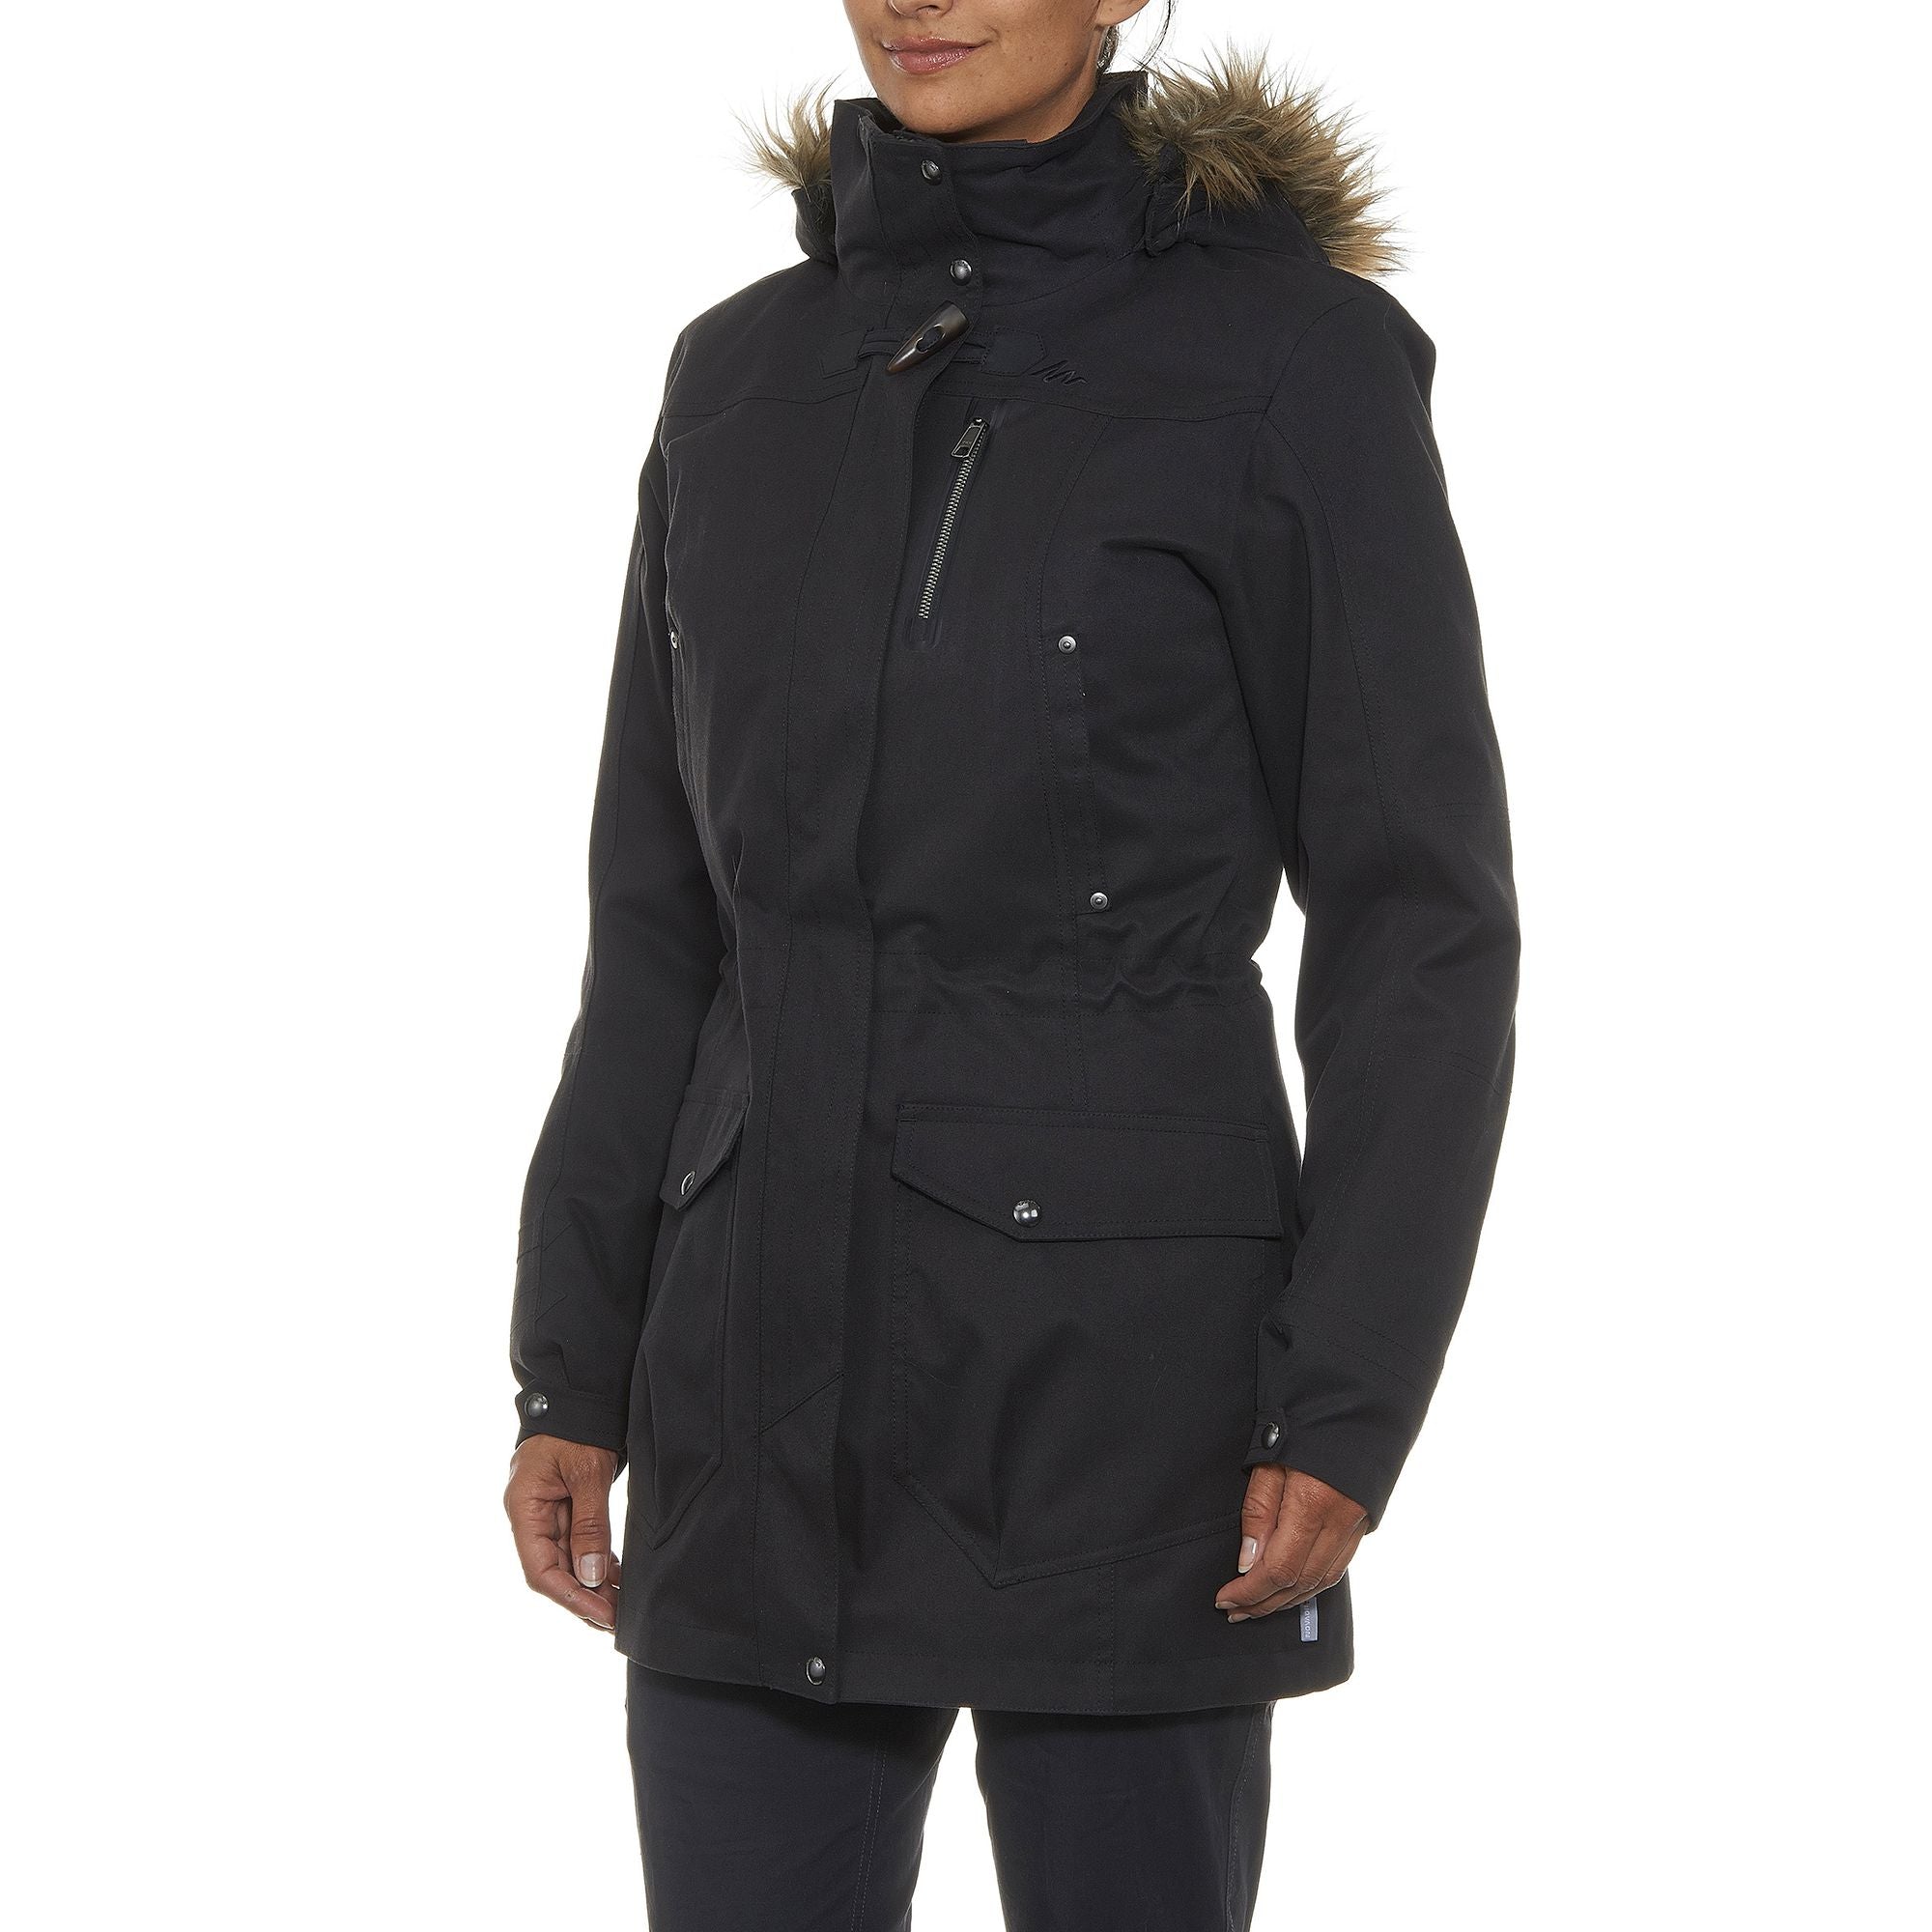 Forclaz Rainwarm 900, 3-in-1 Backpacking Jacket, Women's